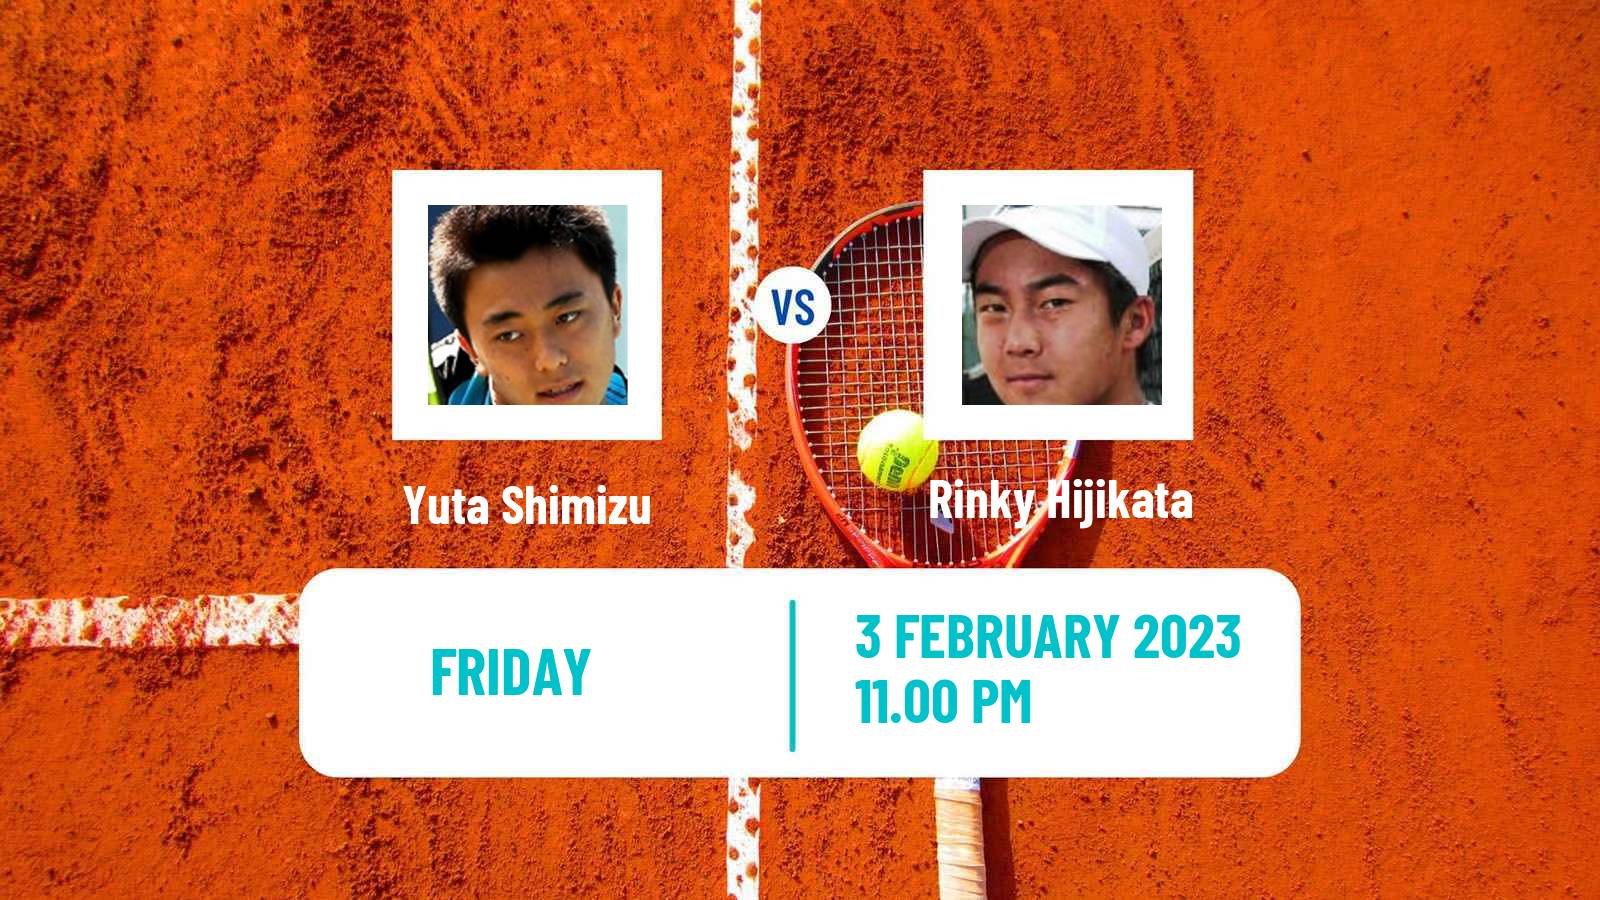 Tennis ATP Challenger Yuta Shimizu - Rinky Hijikata